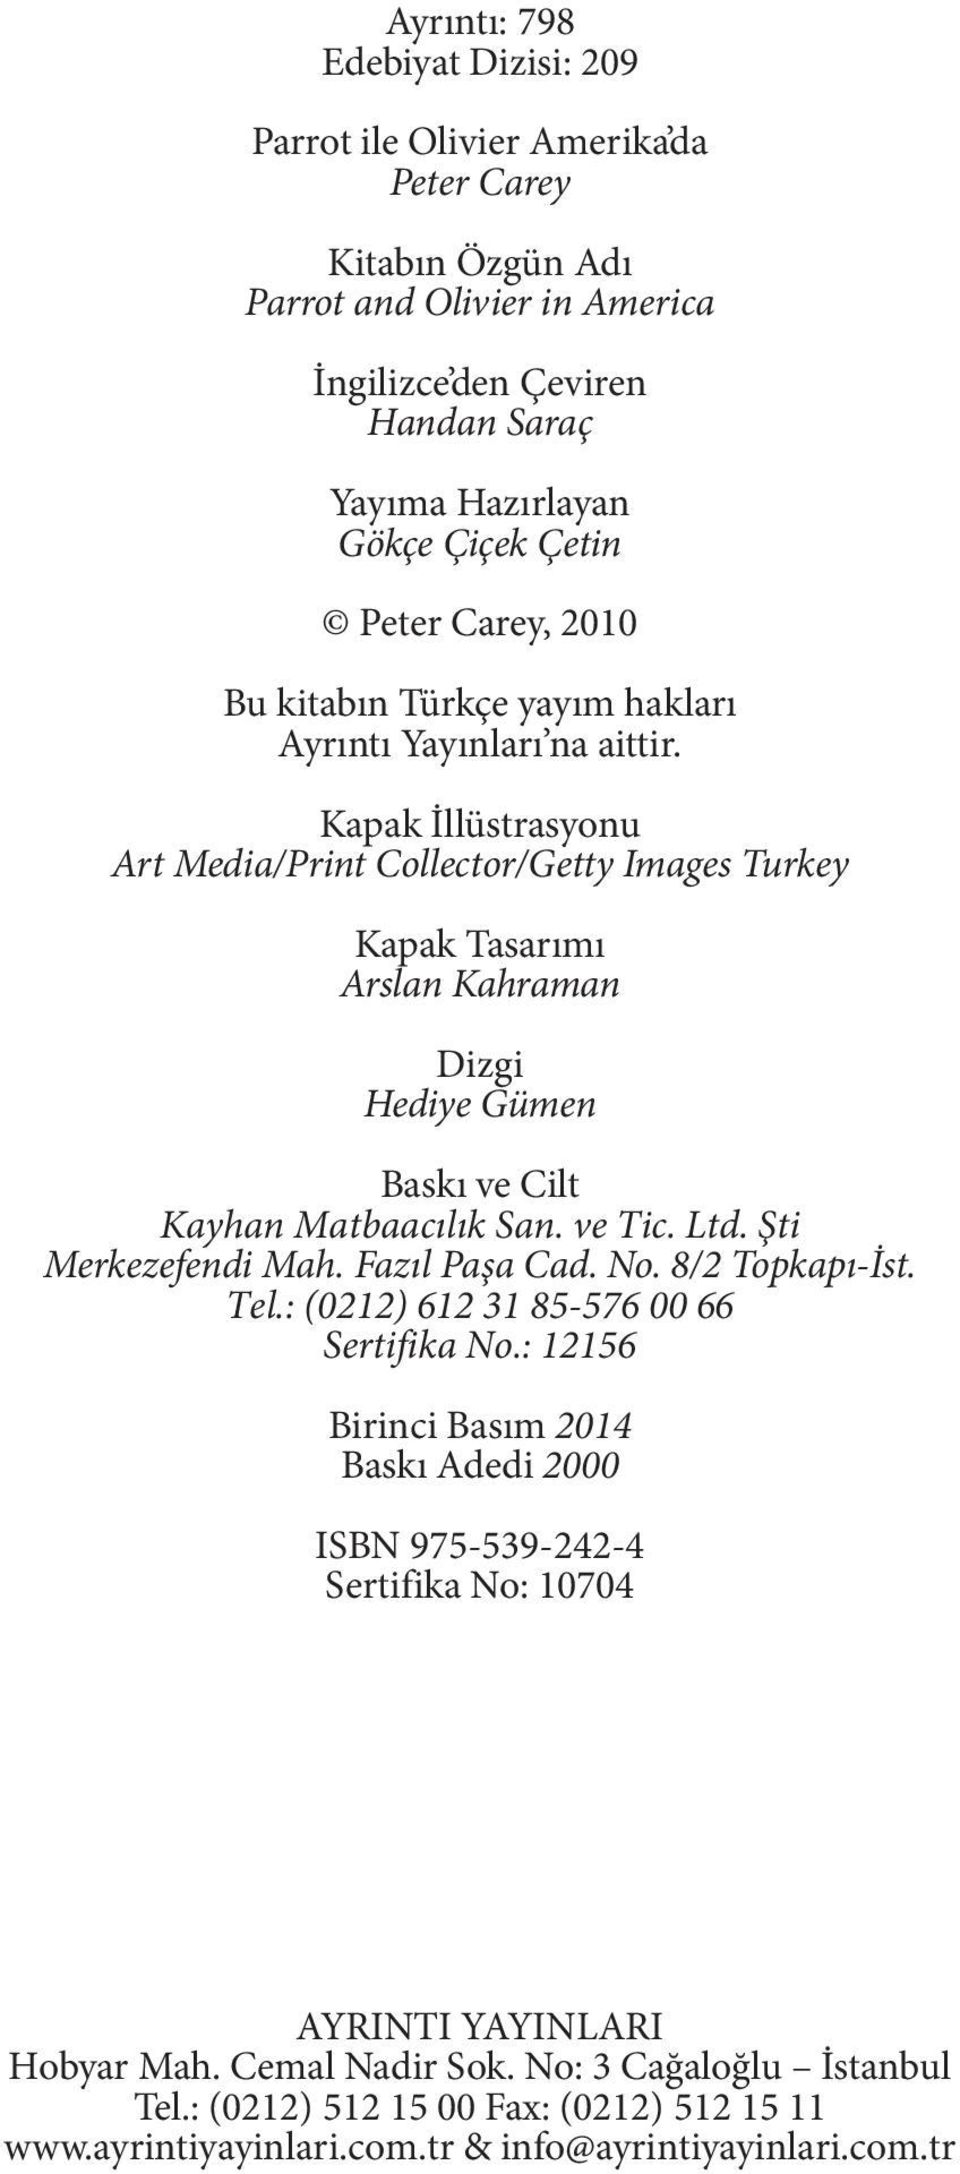 Kapak İllüstrasyonu Art Media/Print Collector/Getty Images Turkey Kapak Tasarımı Arslan Kahraman Dizgi Hediye Gümen Baskı ve Cilt Kayhan Matbaacılık San. ve Tic. Ltd. Şti Merkezefendi Mah.